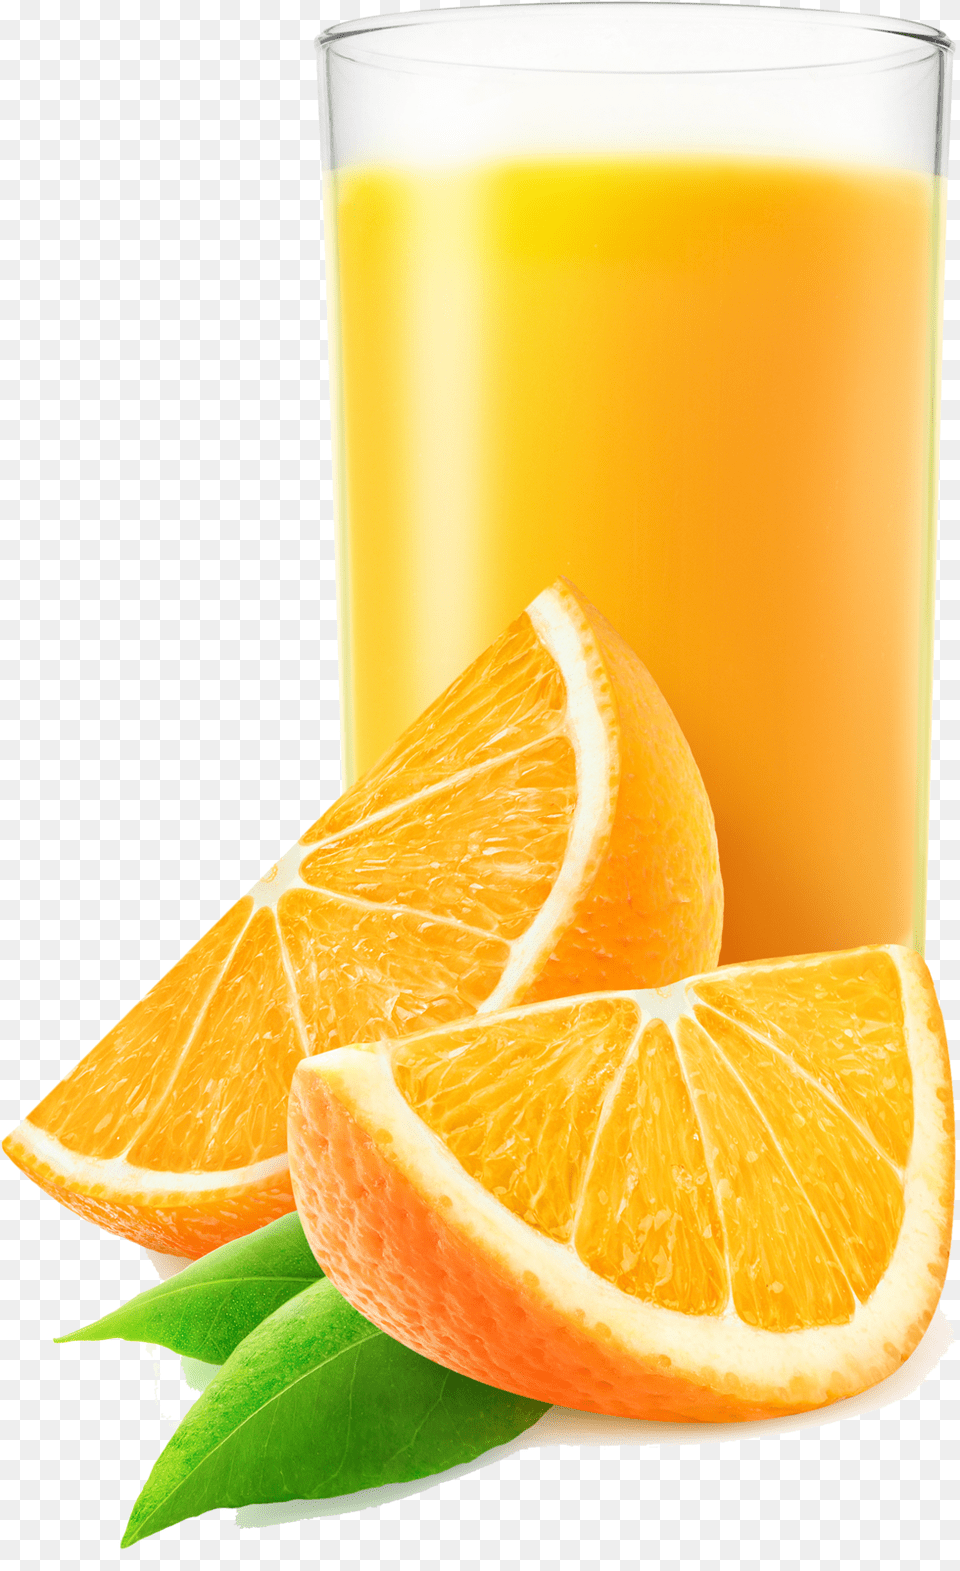 Orange Juice Tomato Juice Soft Drink Apple Juice Juice, Beverage, Orange Juice, Citrus Fruit, Food Png